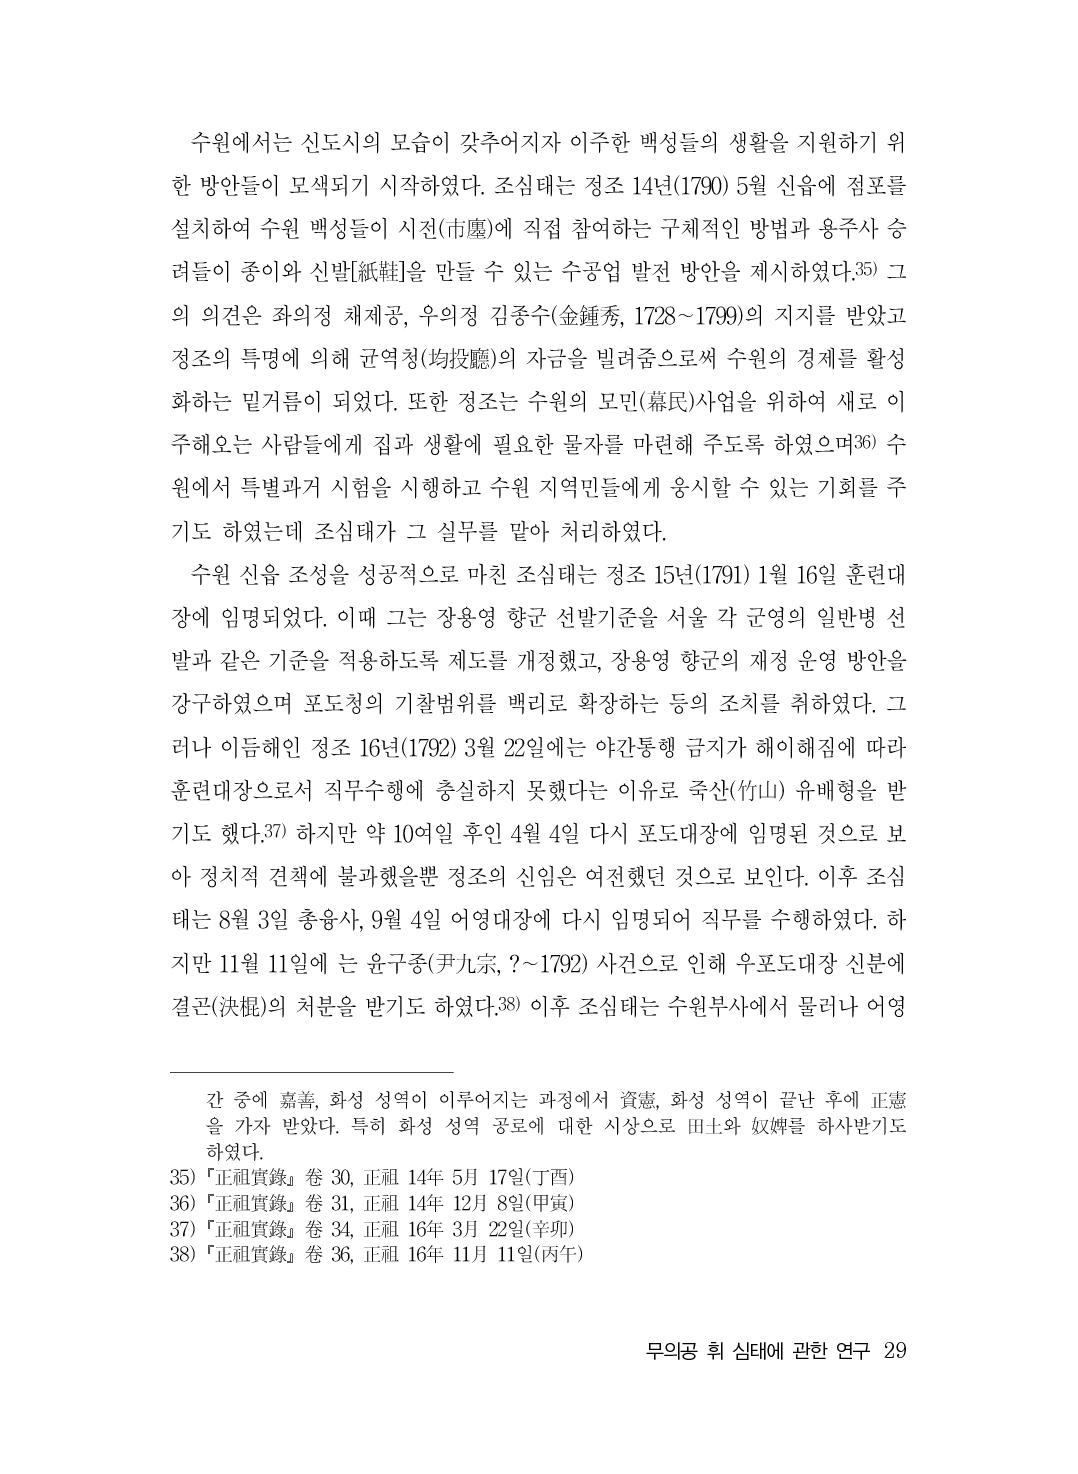 (전체) 송산종보(27호)(최종)_30.jpg